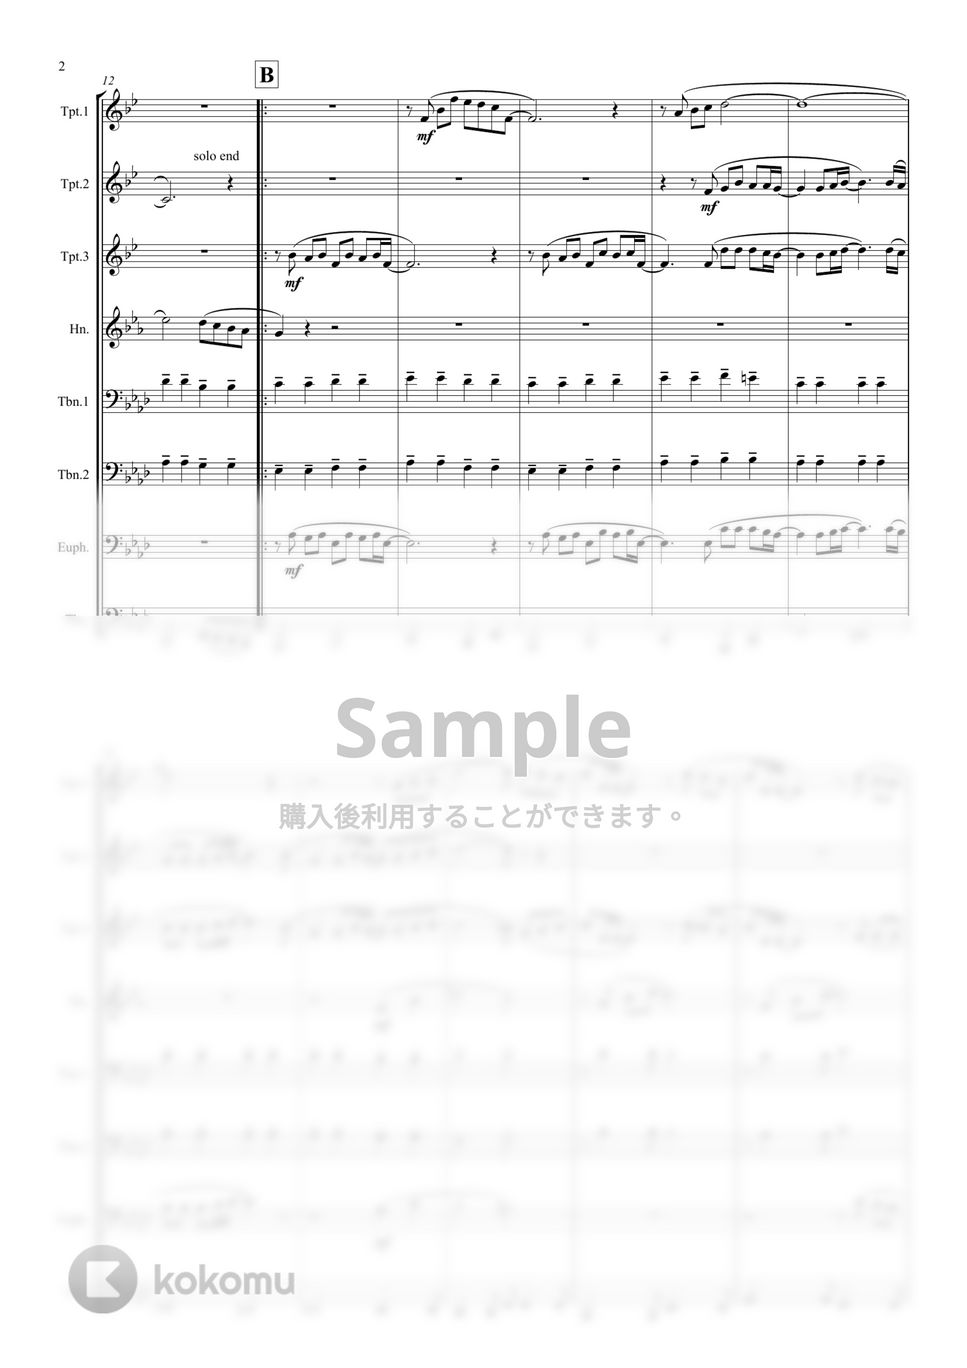 坂本九 - 心の瞳 (金管八重奏) by マロニエミュージック